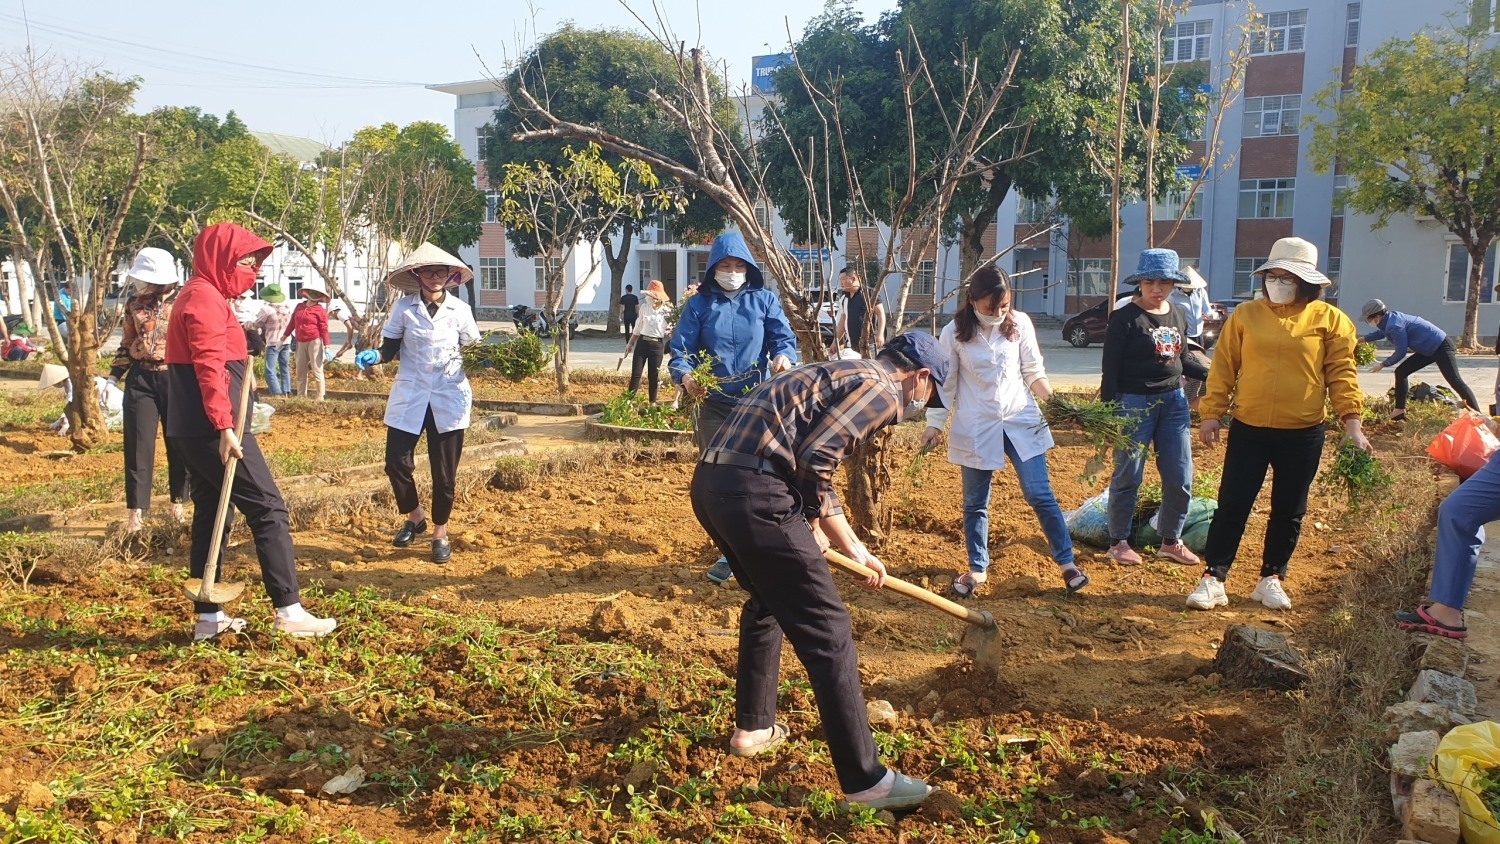 CĐCS Trung tâm kiểm soát bệnh tật tỉnh Lai Châu tổ chức cho đoàn viên trồng cây xanh, tạo cảnh quan, môi trường Xanh – Sạch – Đẹp. Ảnh: Hồng Thơm.